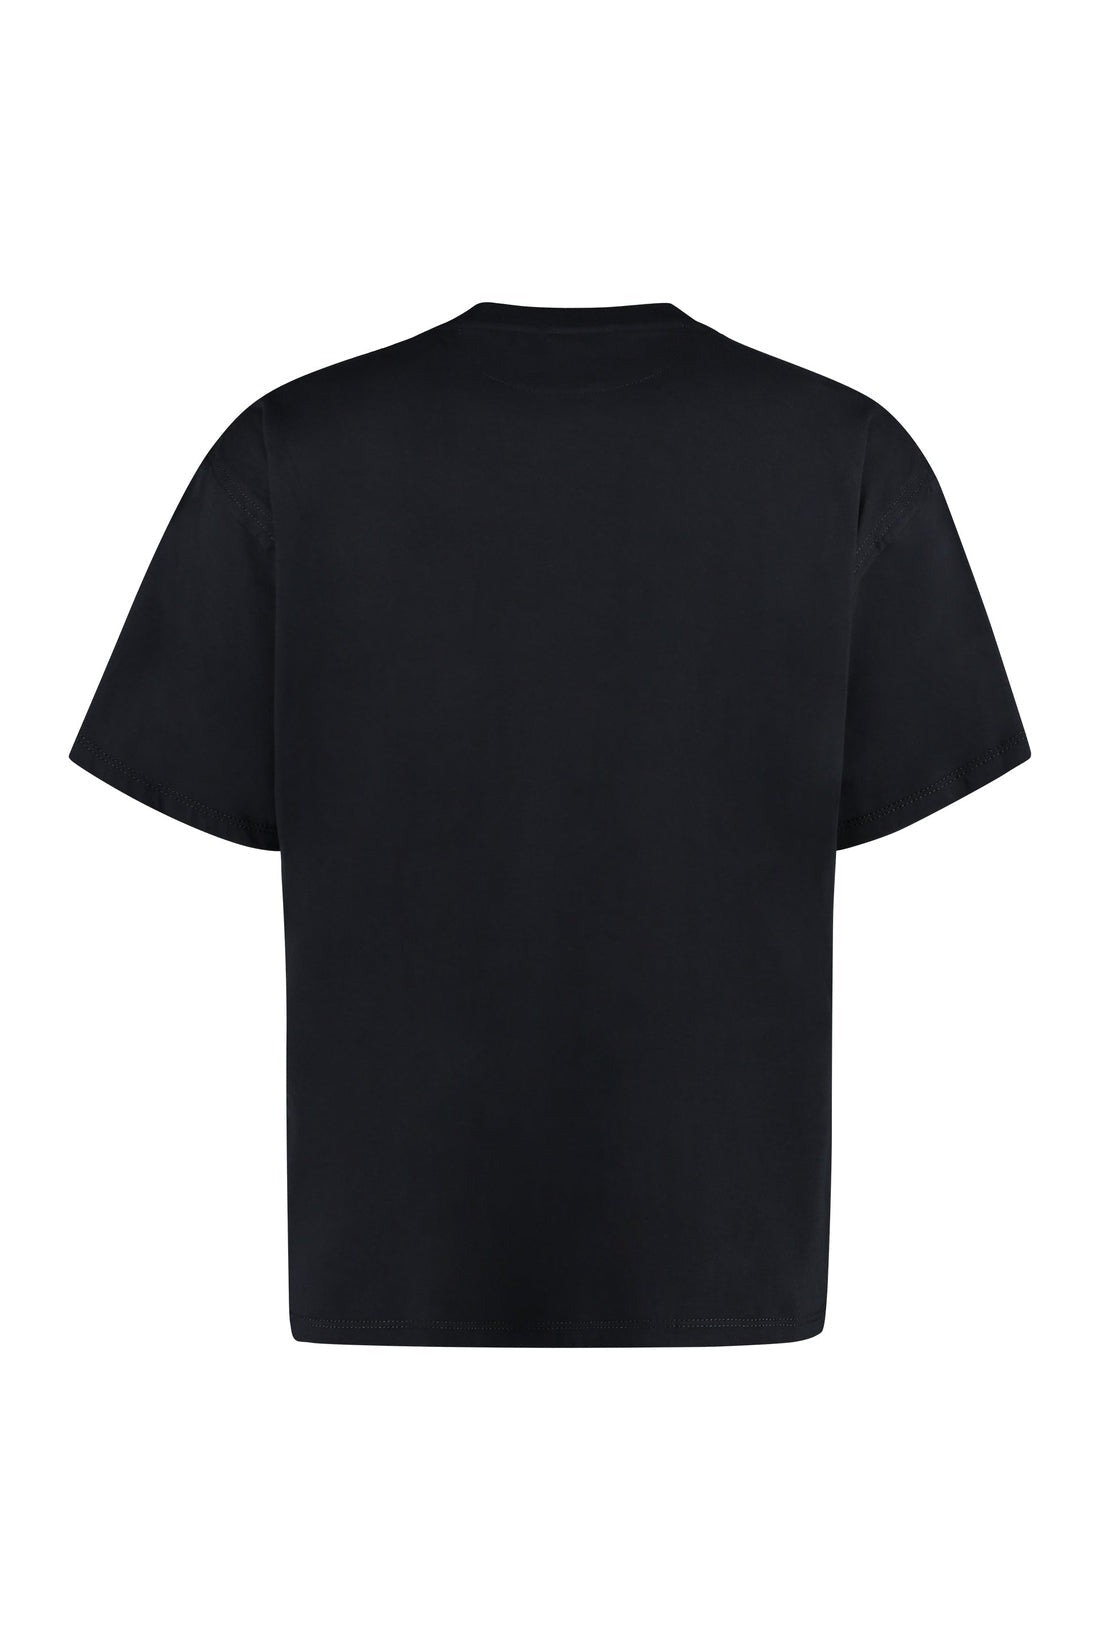 Valentino-OUTLET-SALE-Cotton blend T-shirt-ARCHIVIST